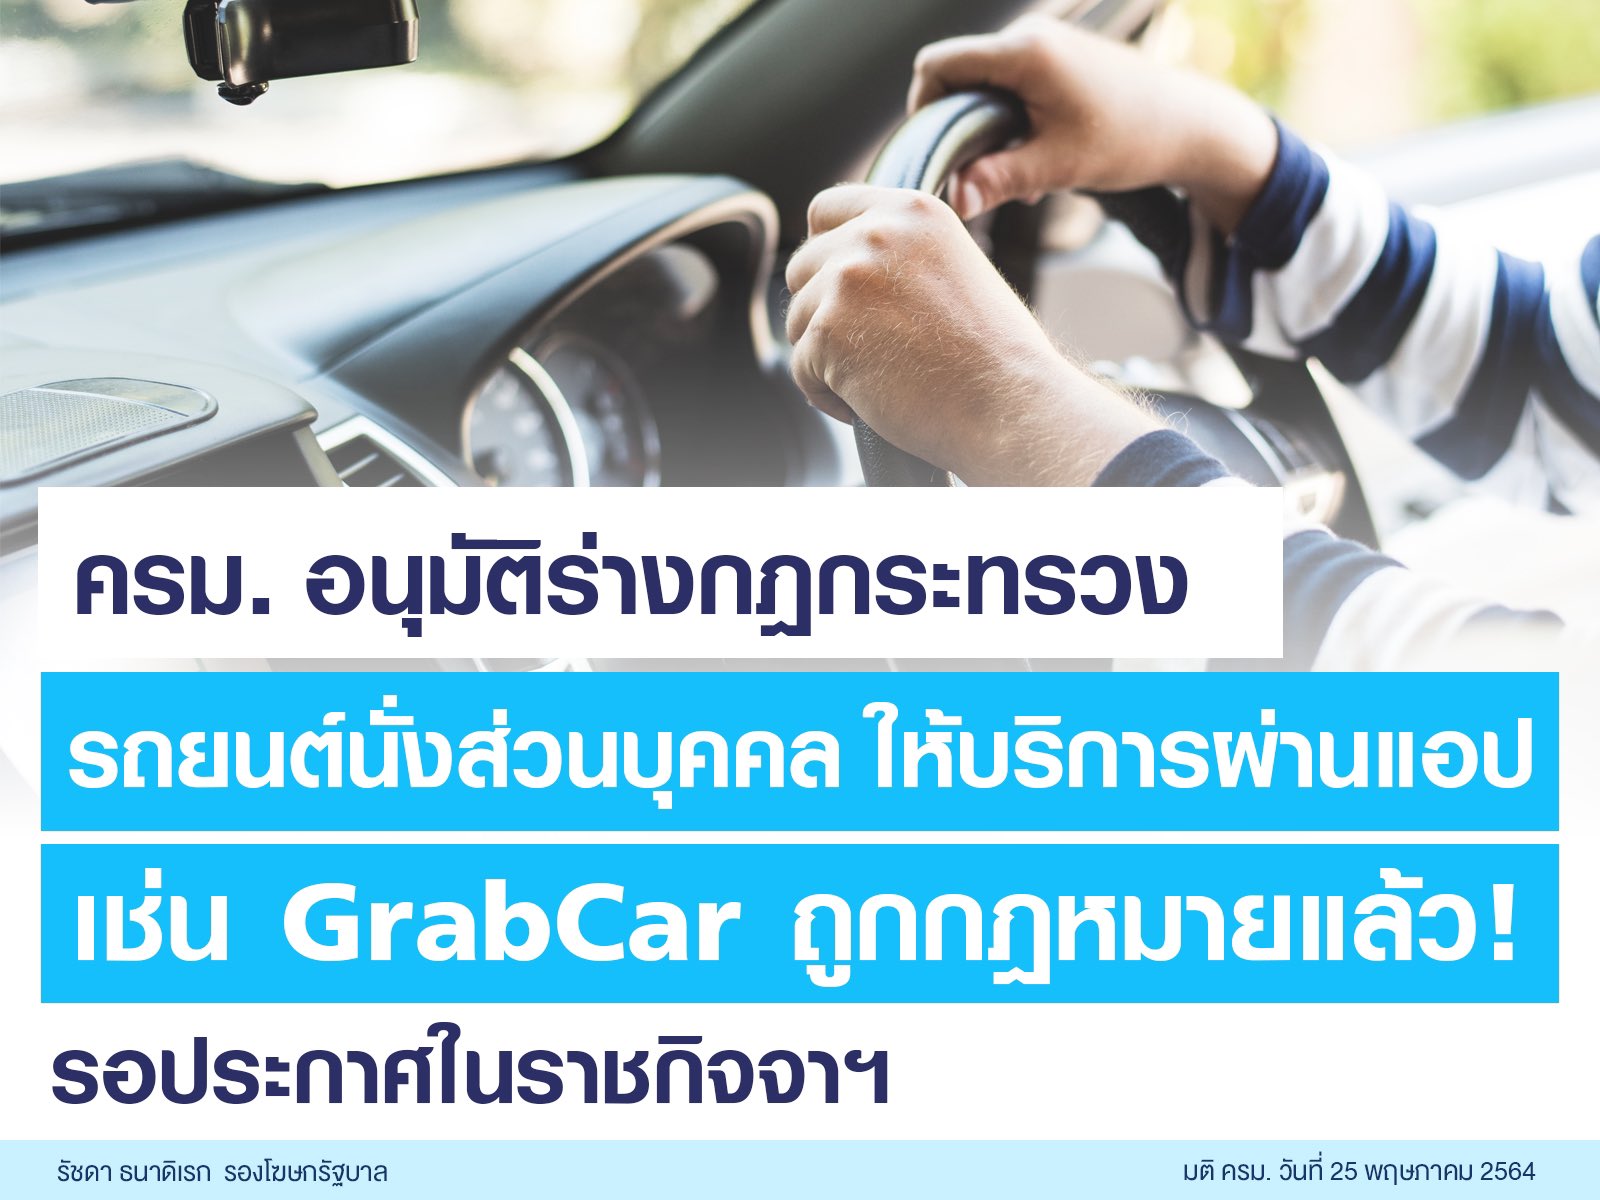 อนุมัติ ร่างกฏหมาย GrabCar  รถยนต์นั่งส่วนบุคคลไม่เกิน7คน ให้บริการผ่านแอป ถูกกฎหมายแล้ว 